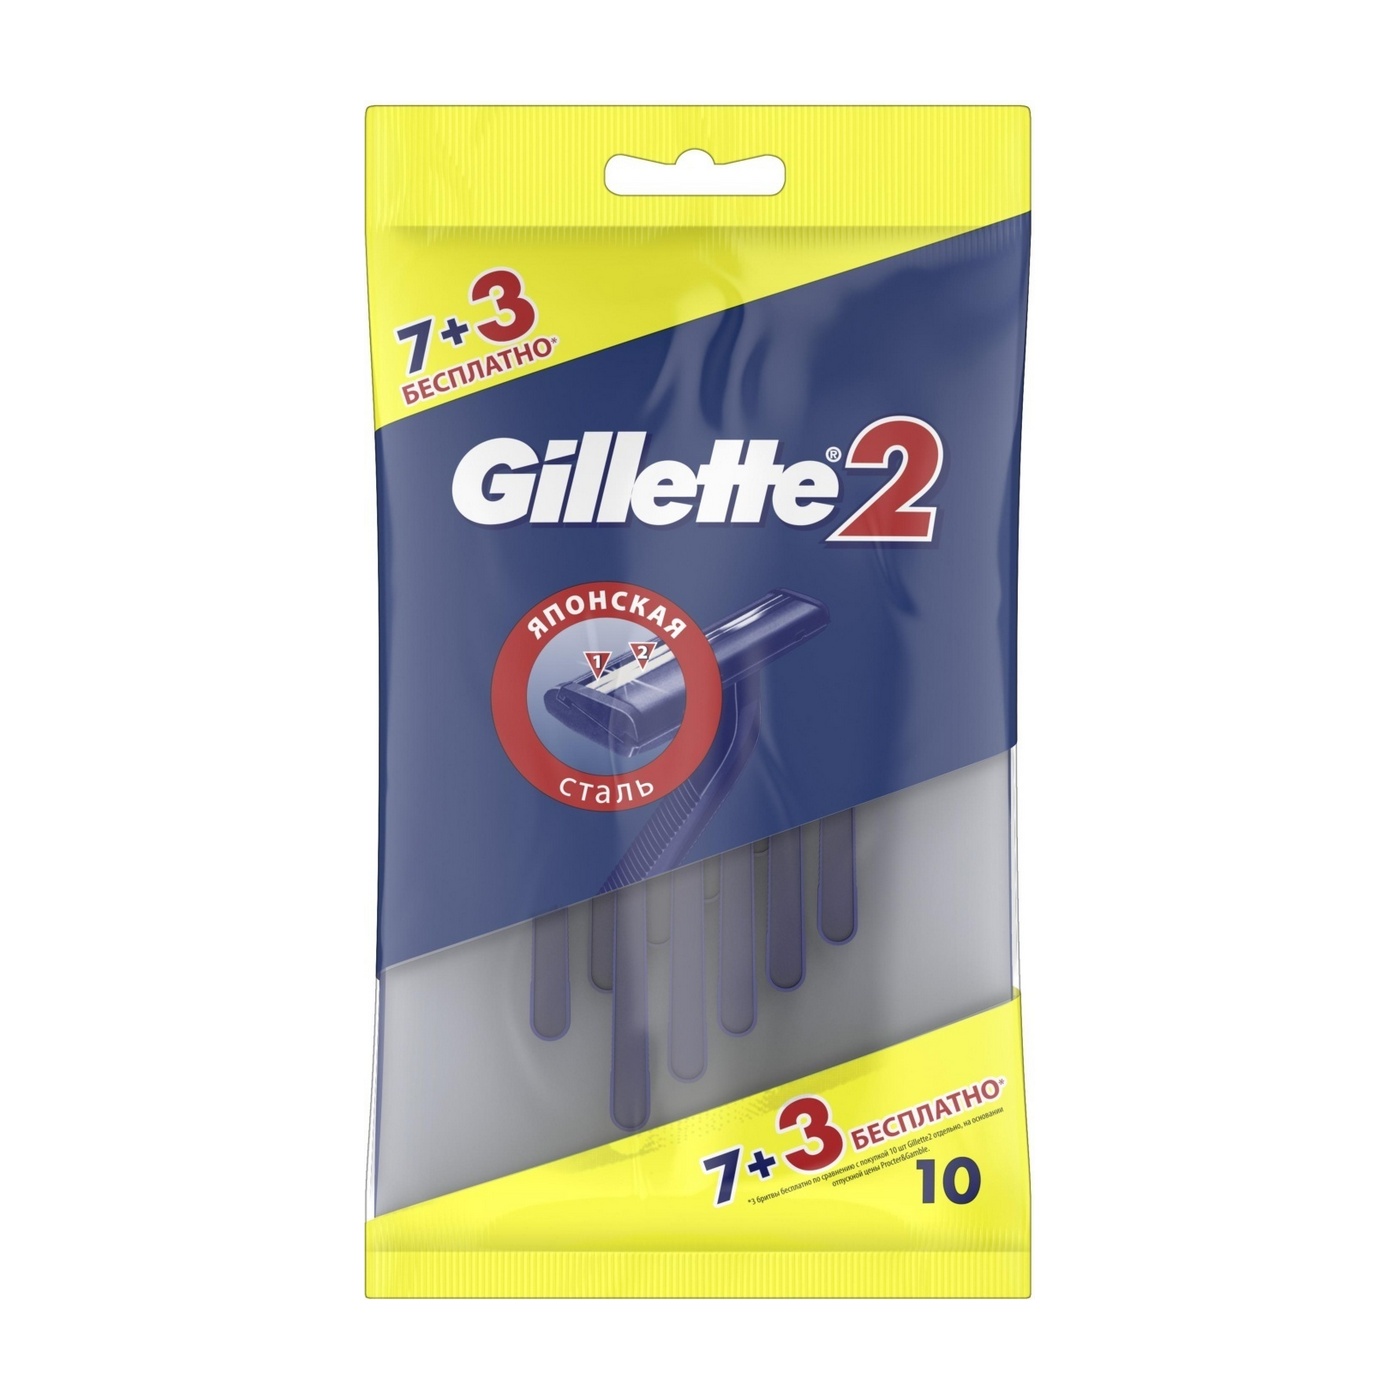 Gillette2, станки одноразовые для бритья, 7 + 3 шт. gillette2 станки одноразовые для бритья 7 3 шт